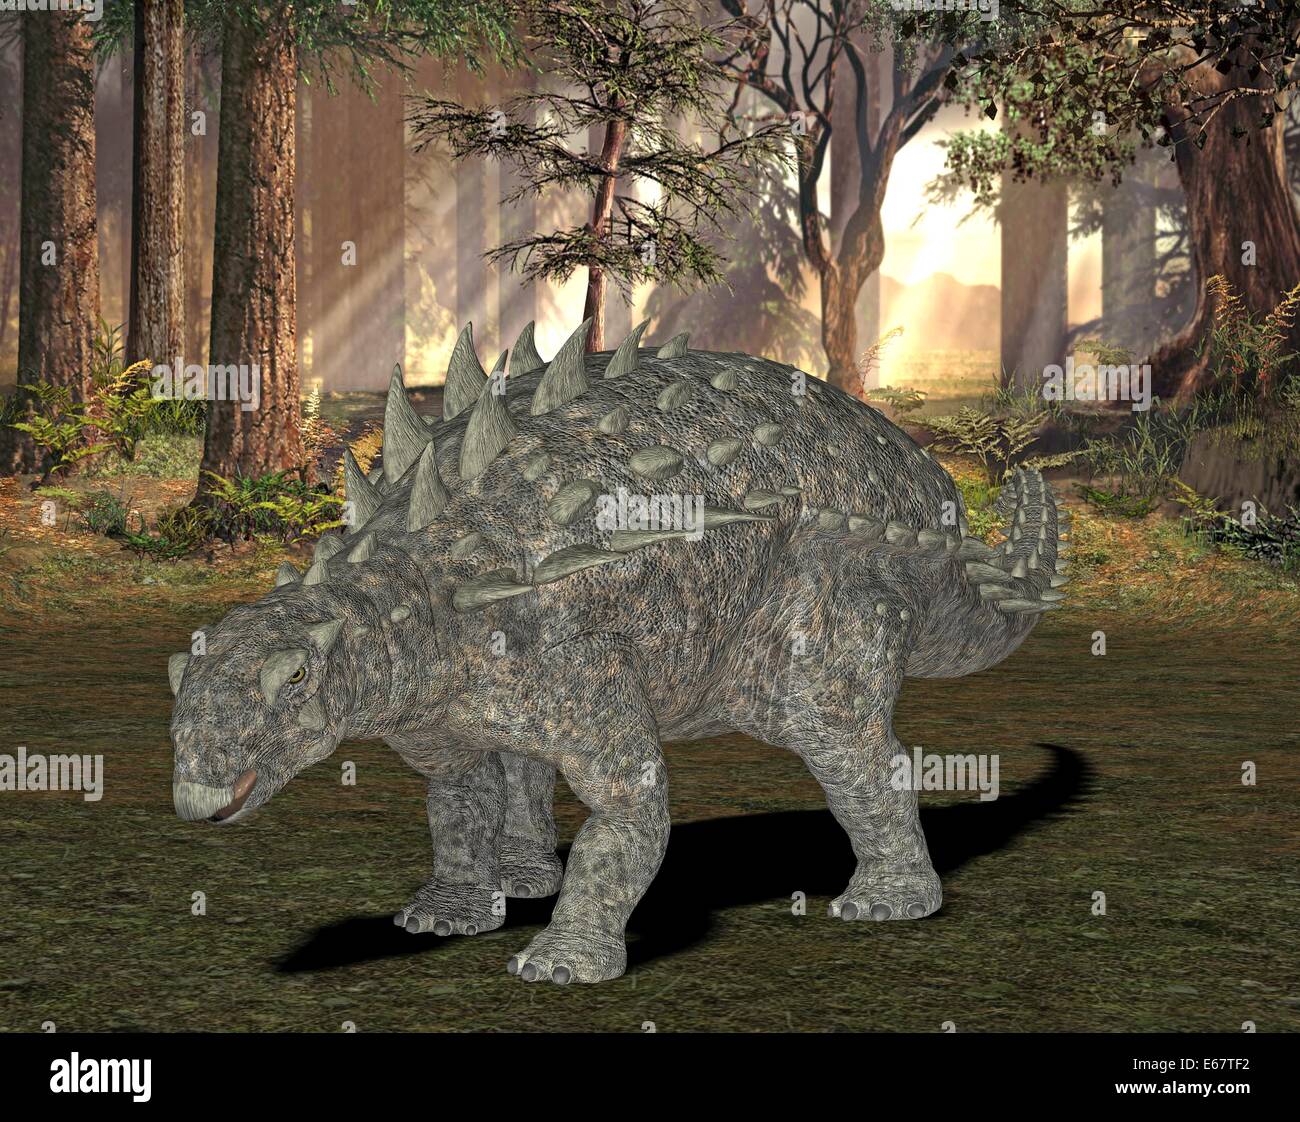 Dinosaurier Polacanthus / dinosaur Polacanthus Stock Photo